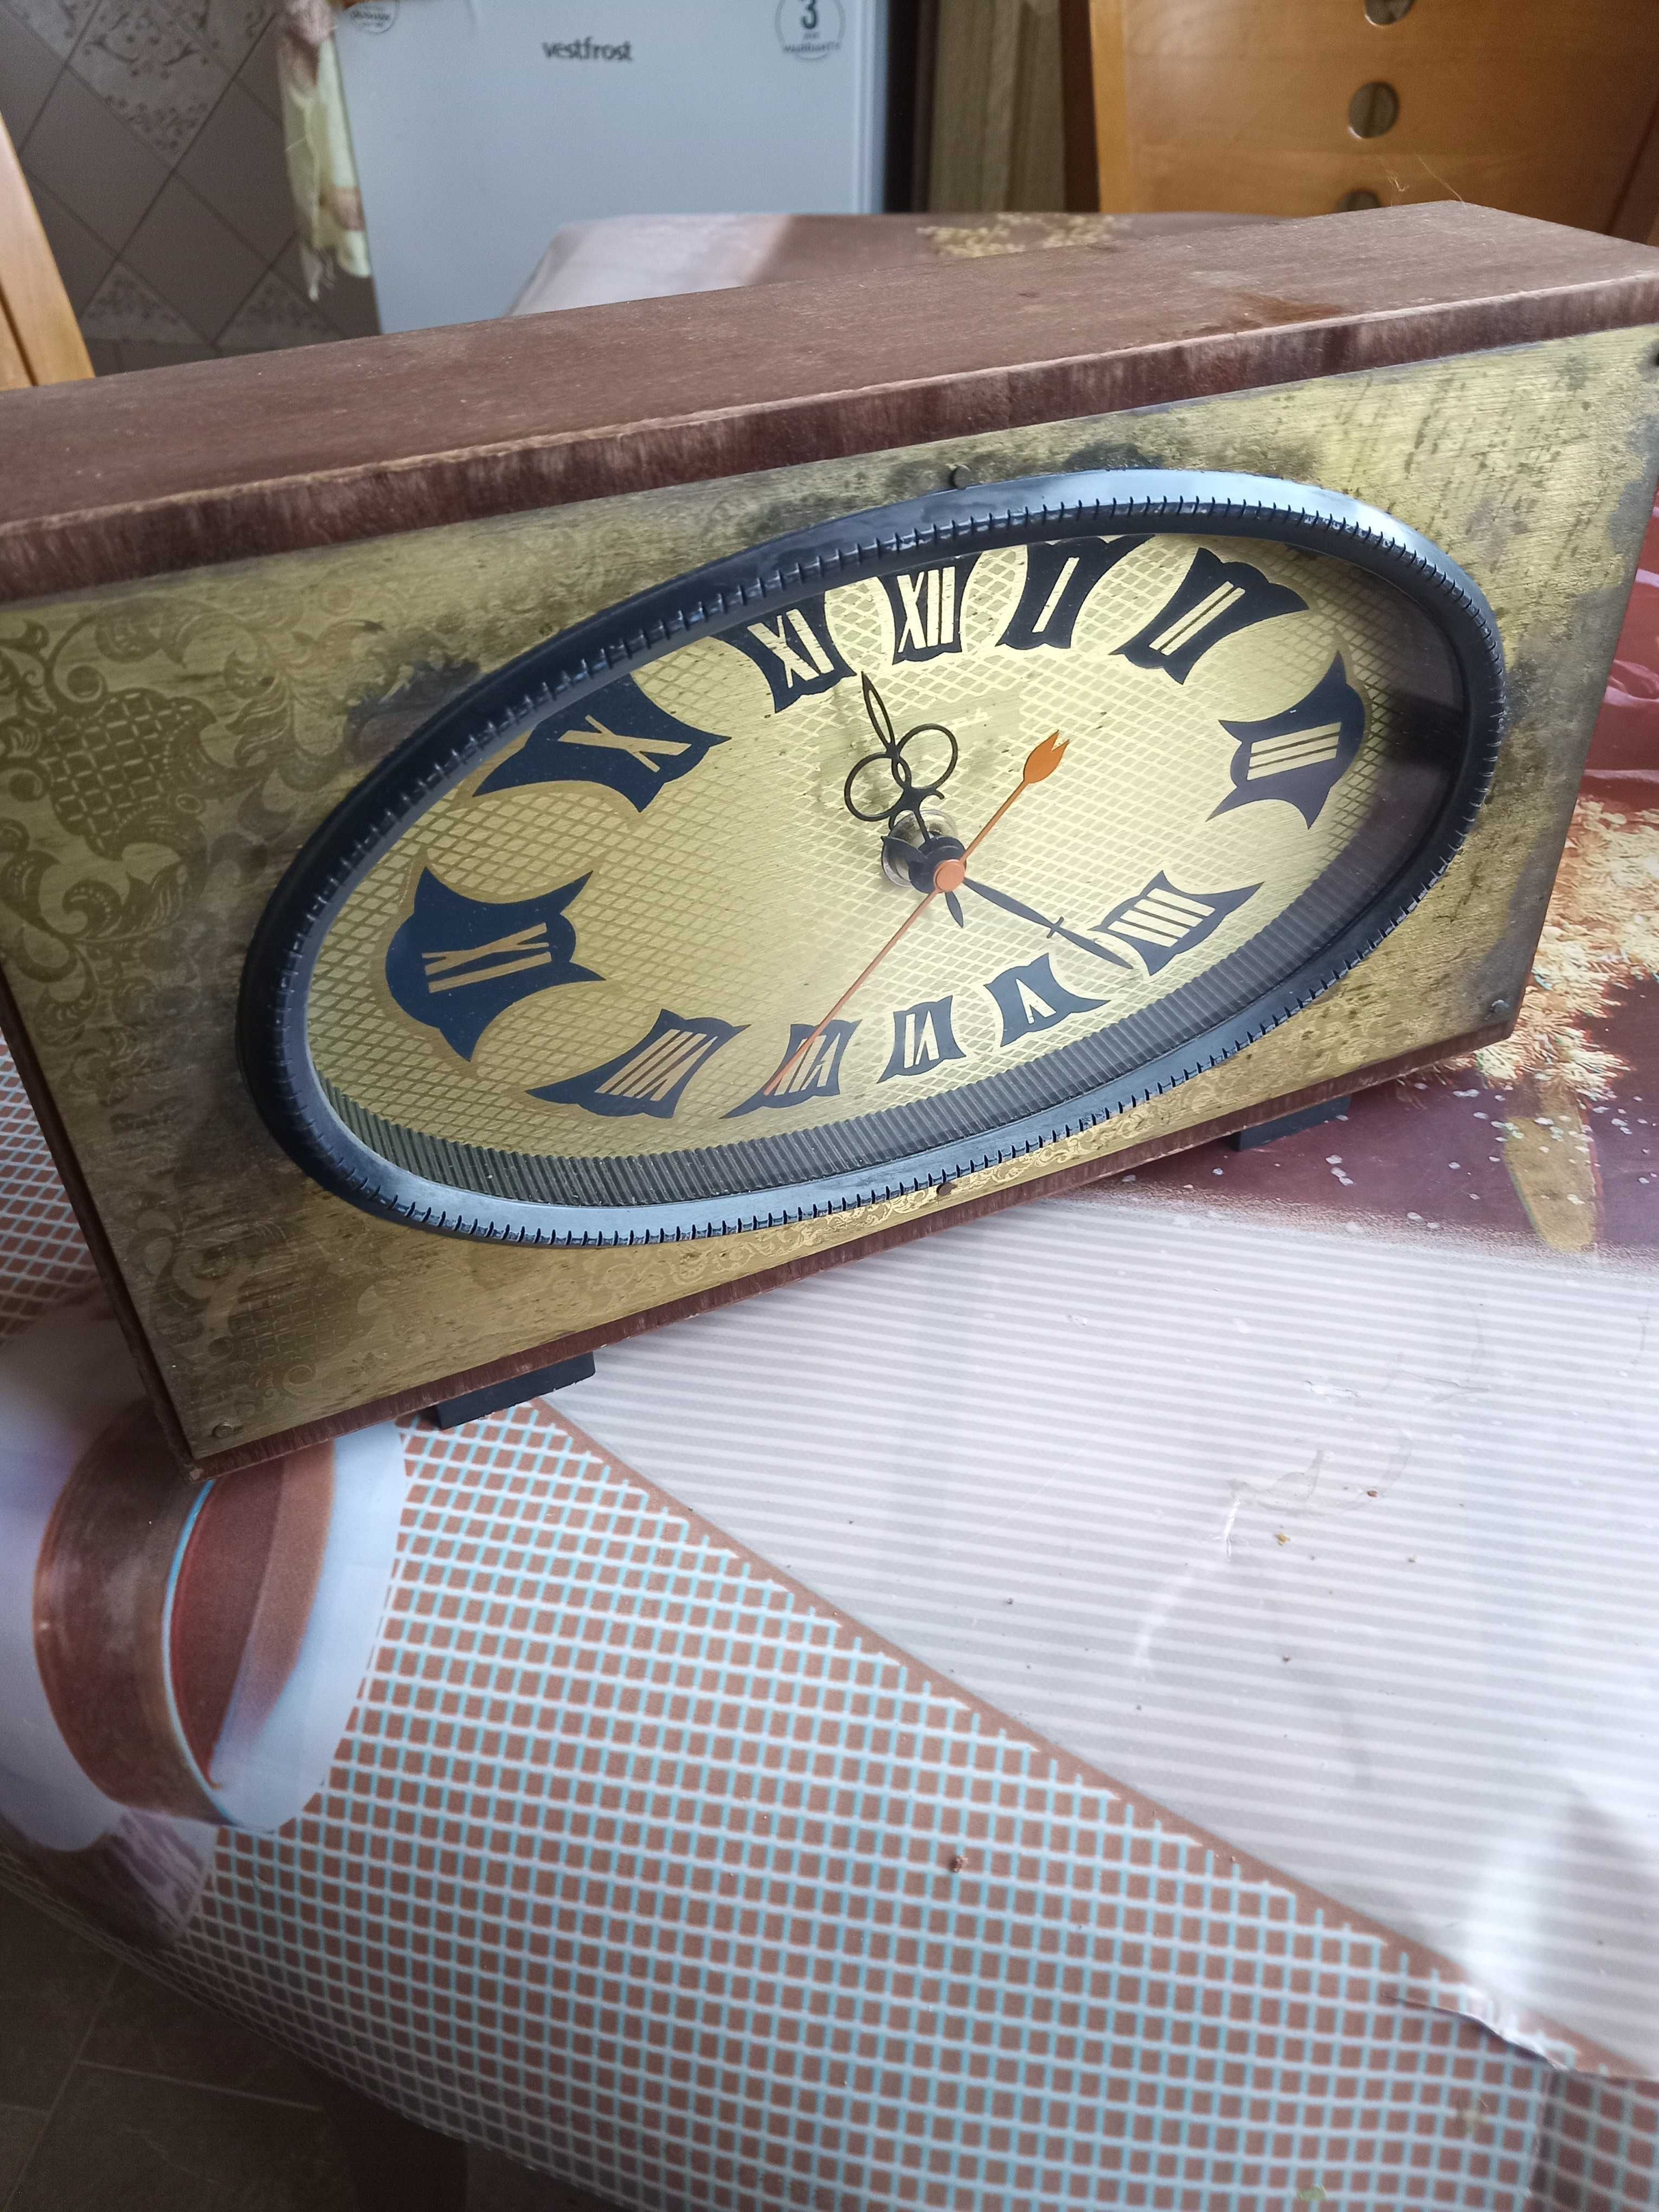 Продам настольные часы Янтарь. Производство СССР. 60-х годов.